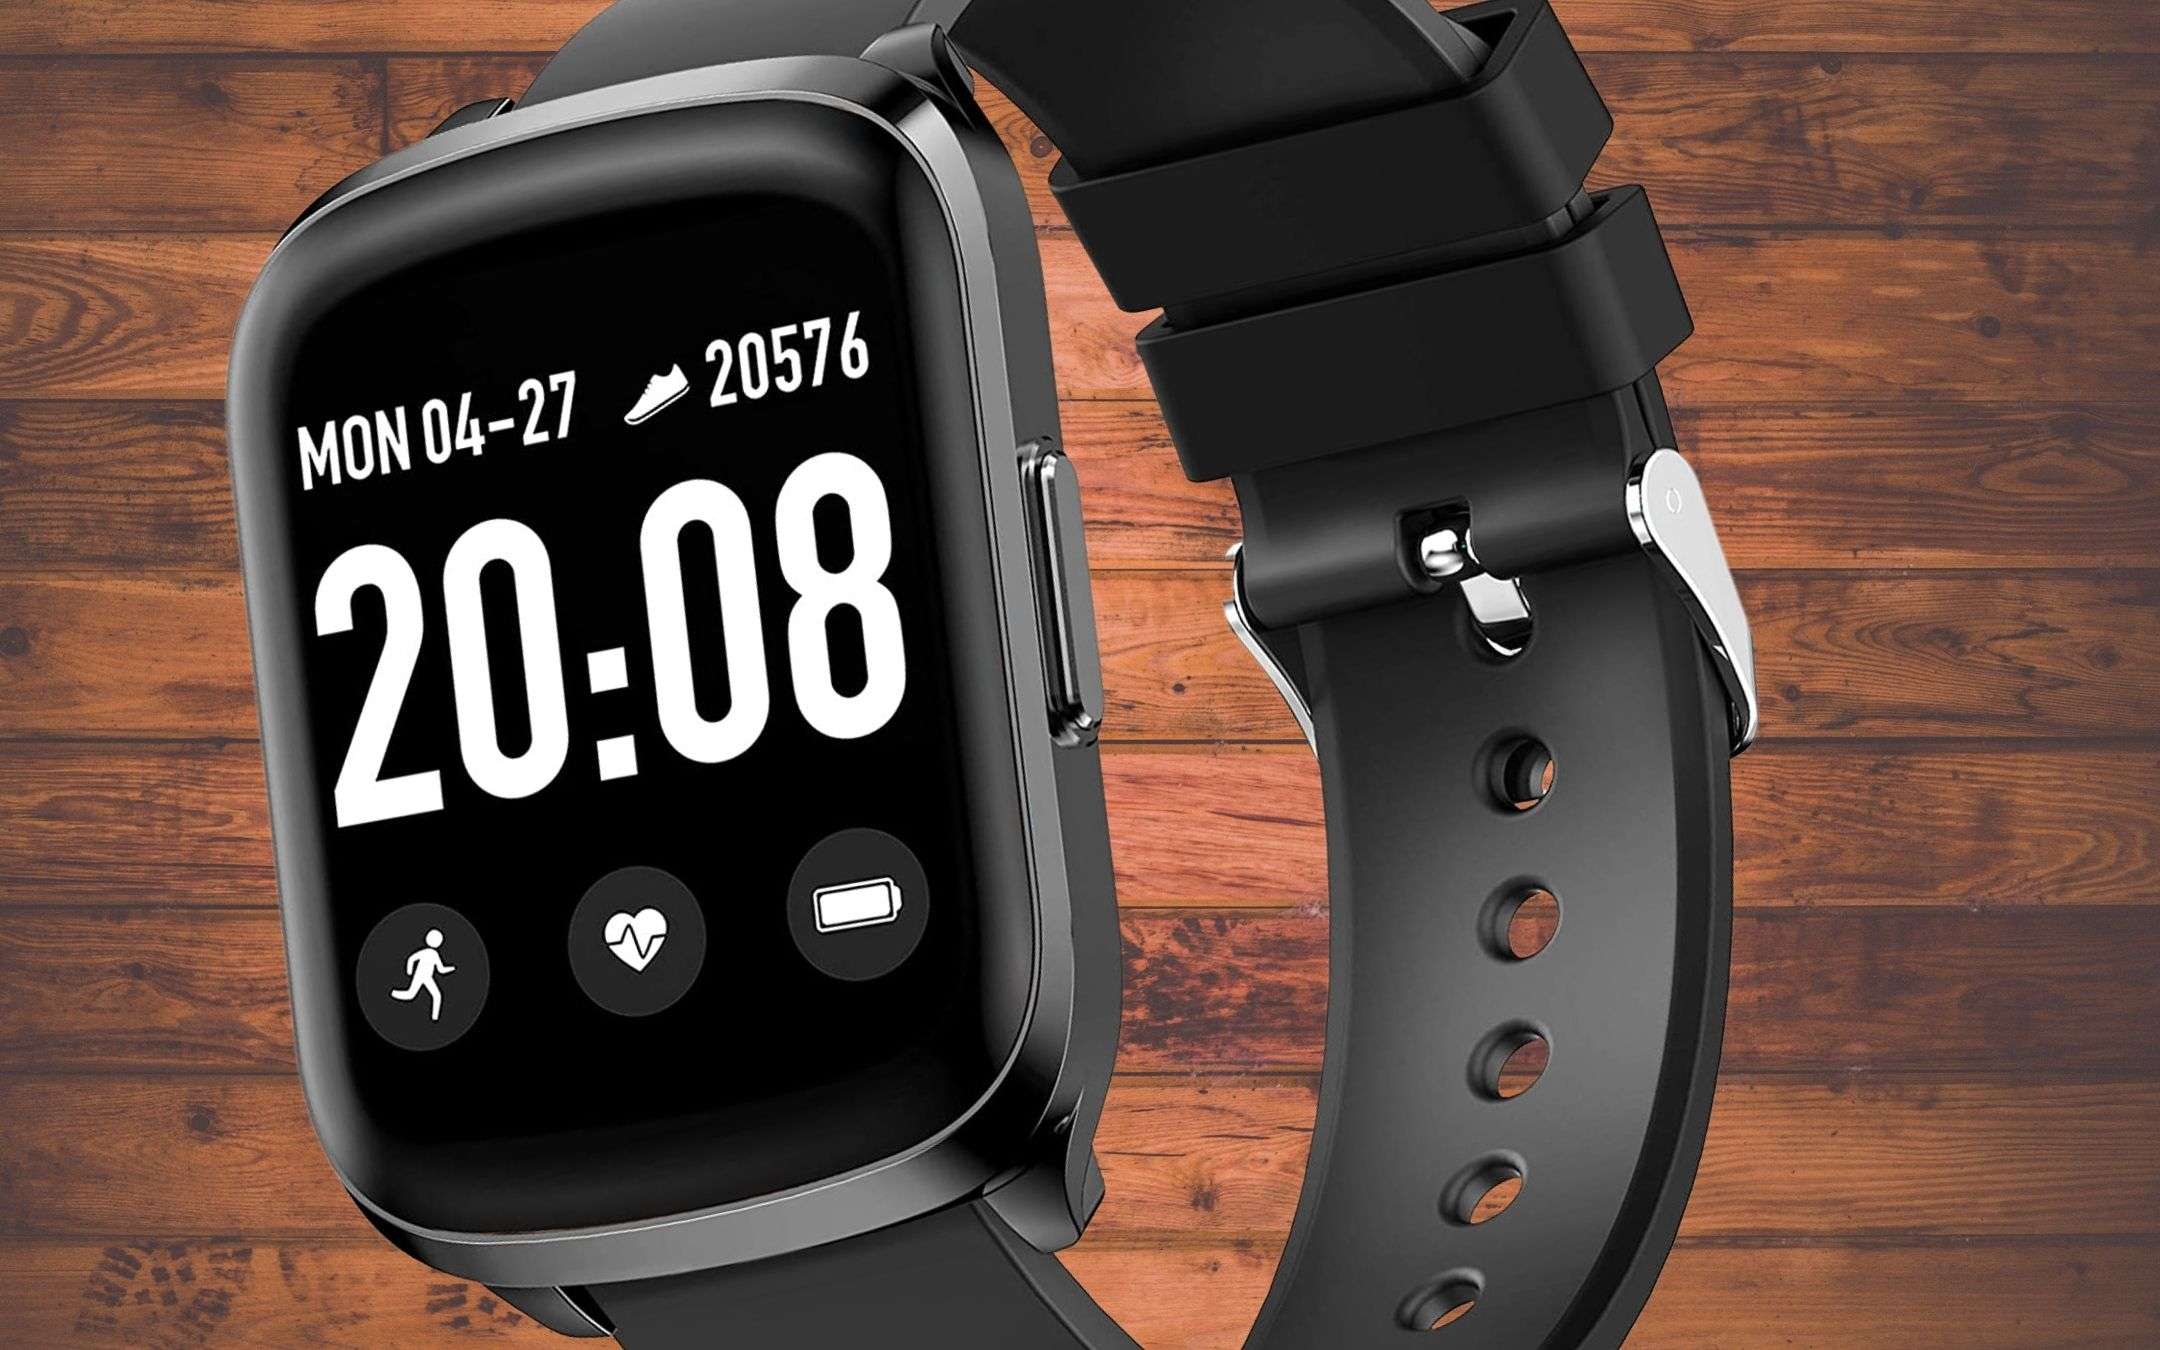 Smartwatch nuovo? 14€ su Amazon, spedizioni rapide gratis